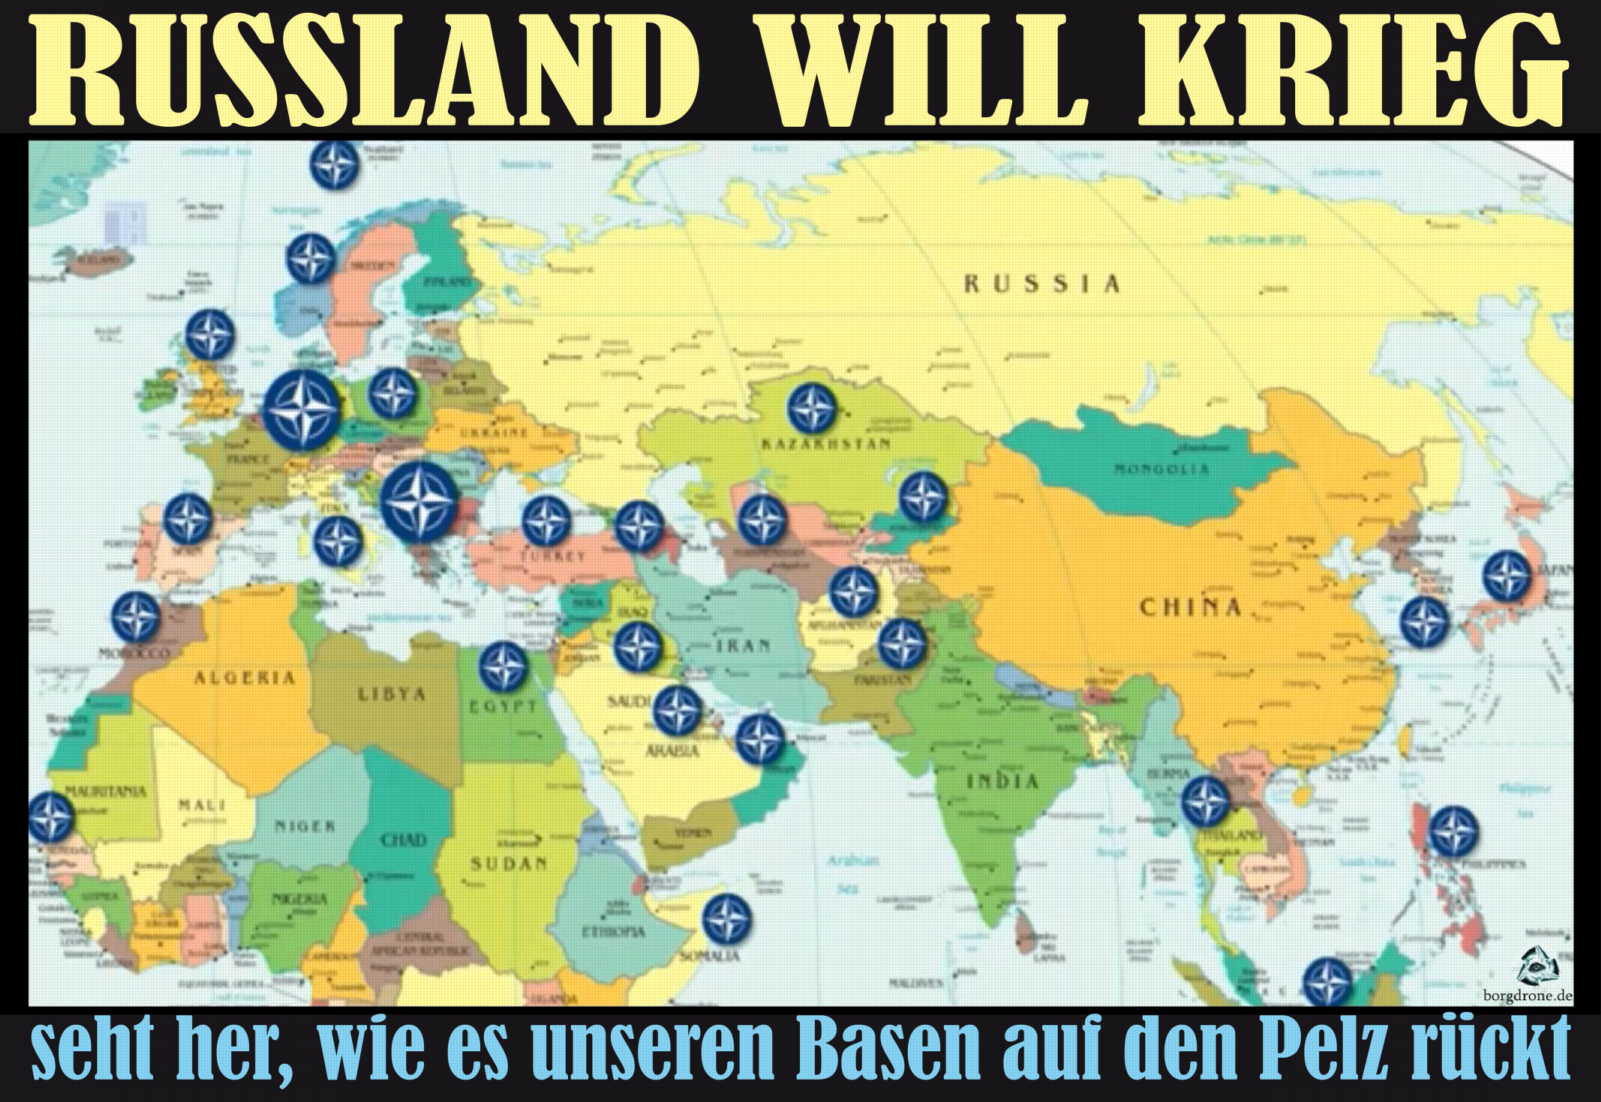 russland-will-krieg-us-basen-bedroht-verteidigungskrieg-humanitaere-mission-intervention-qpress.jpg